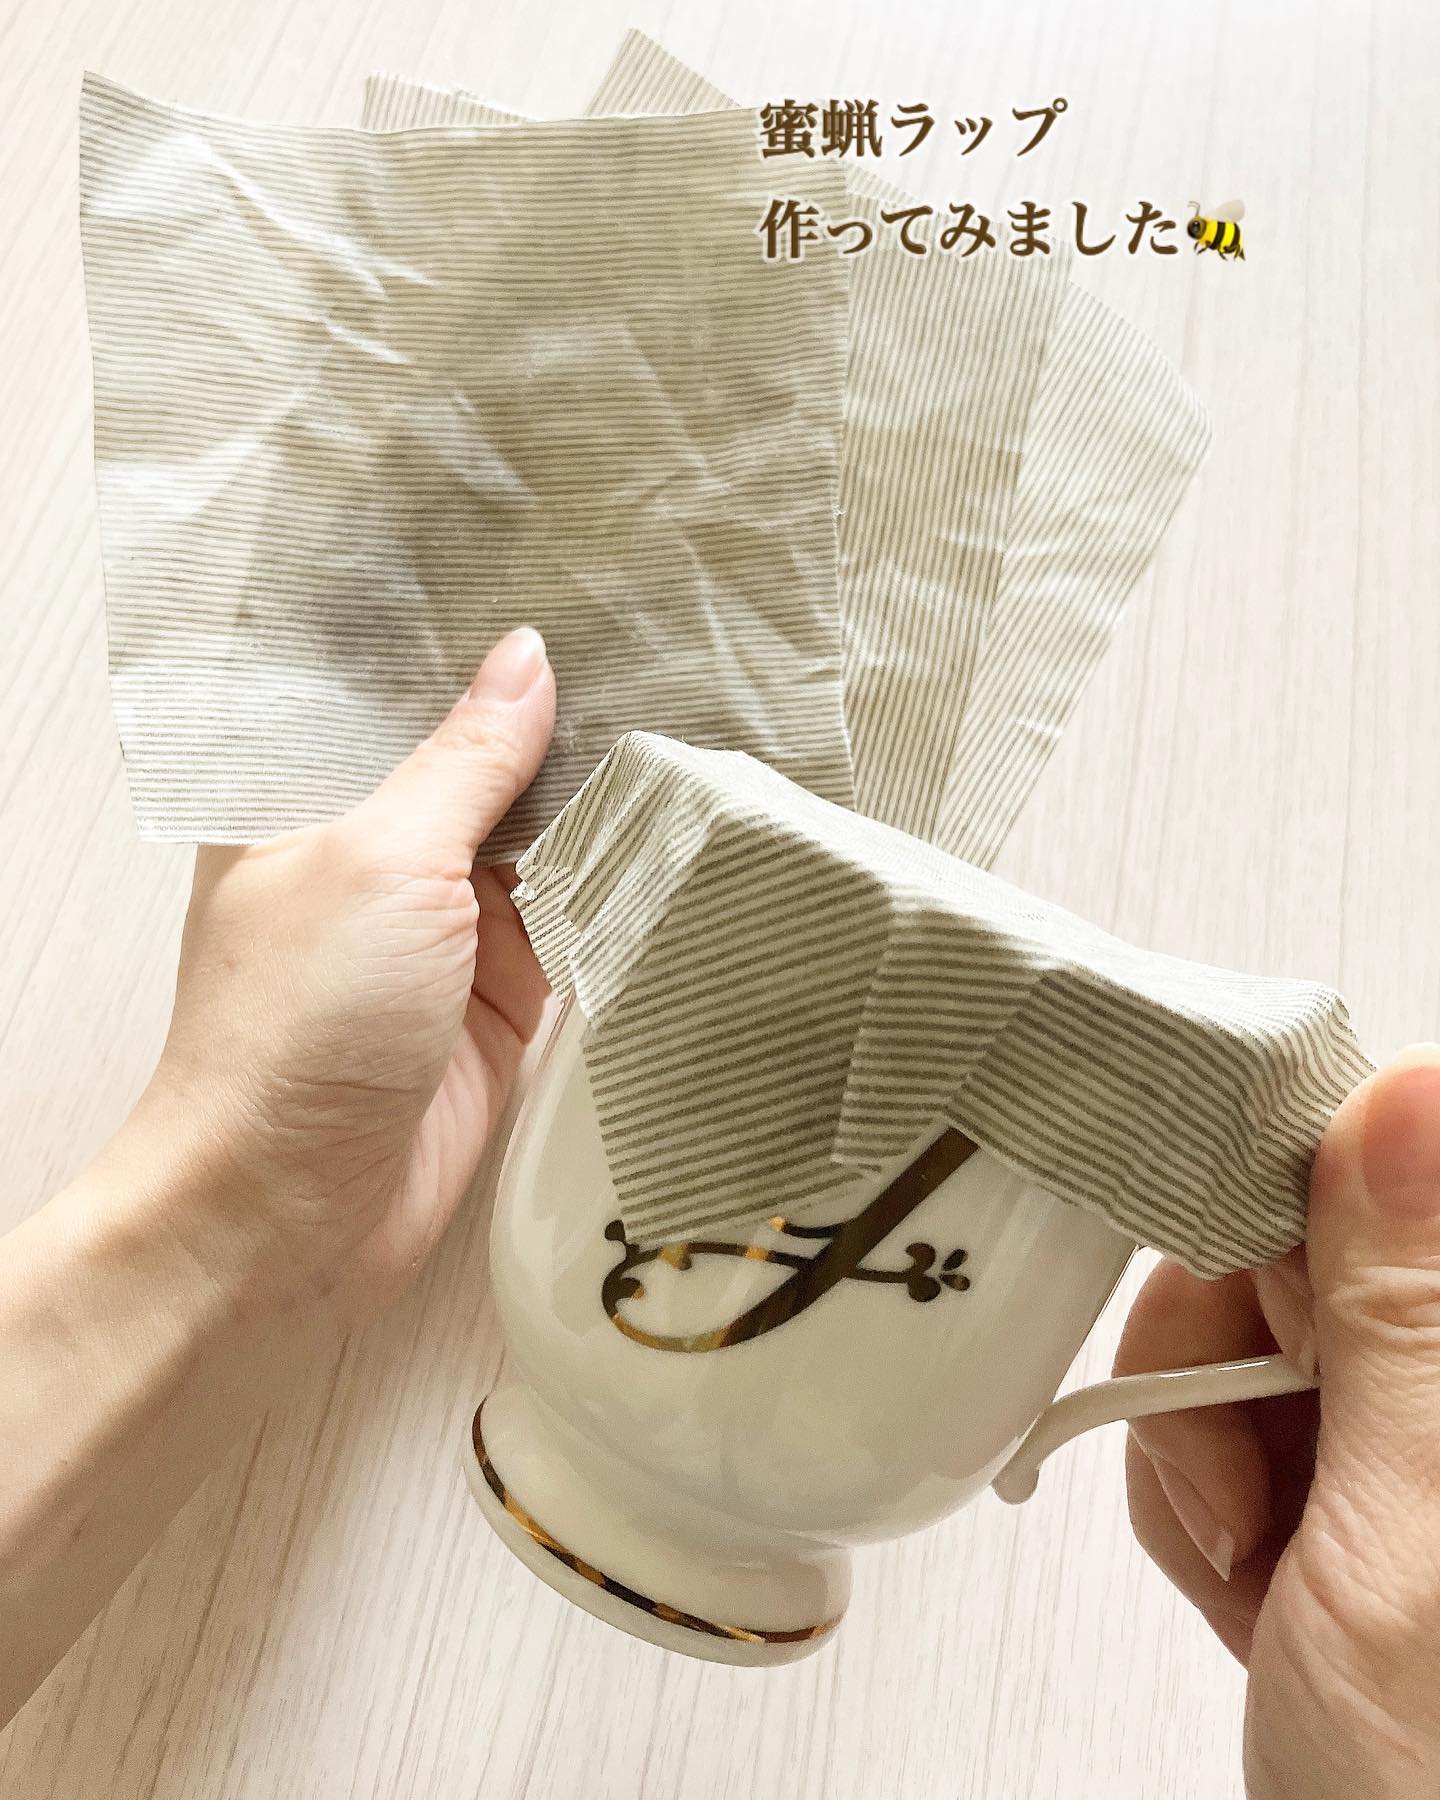 口コミ投稿：「株式会社KAWAGUCHI / オーガニックの布でつくる みつろうラップ」25cm×25cm1枚分 9…